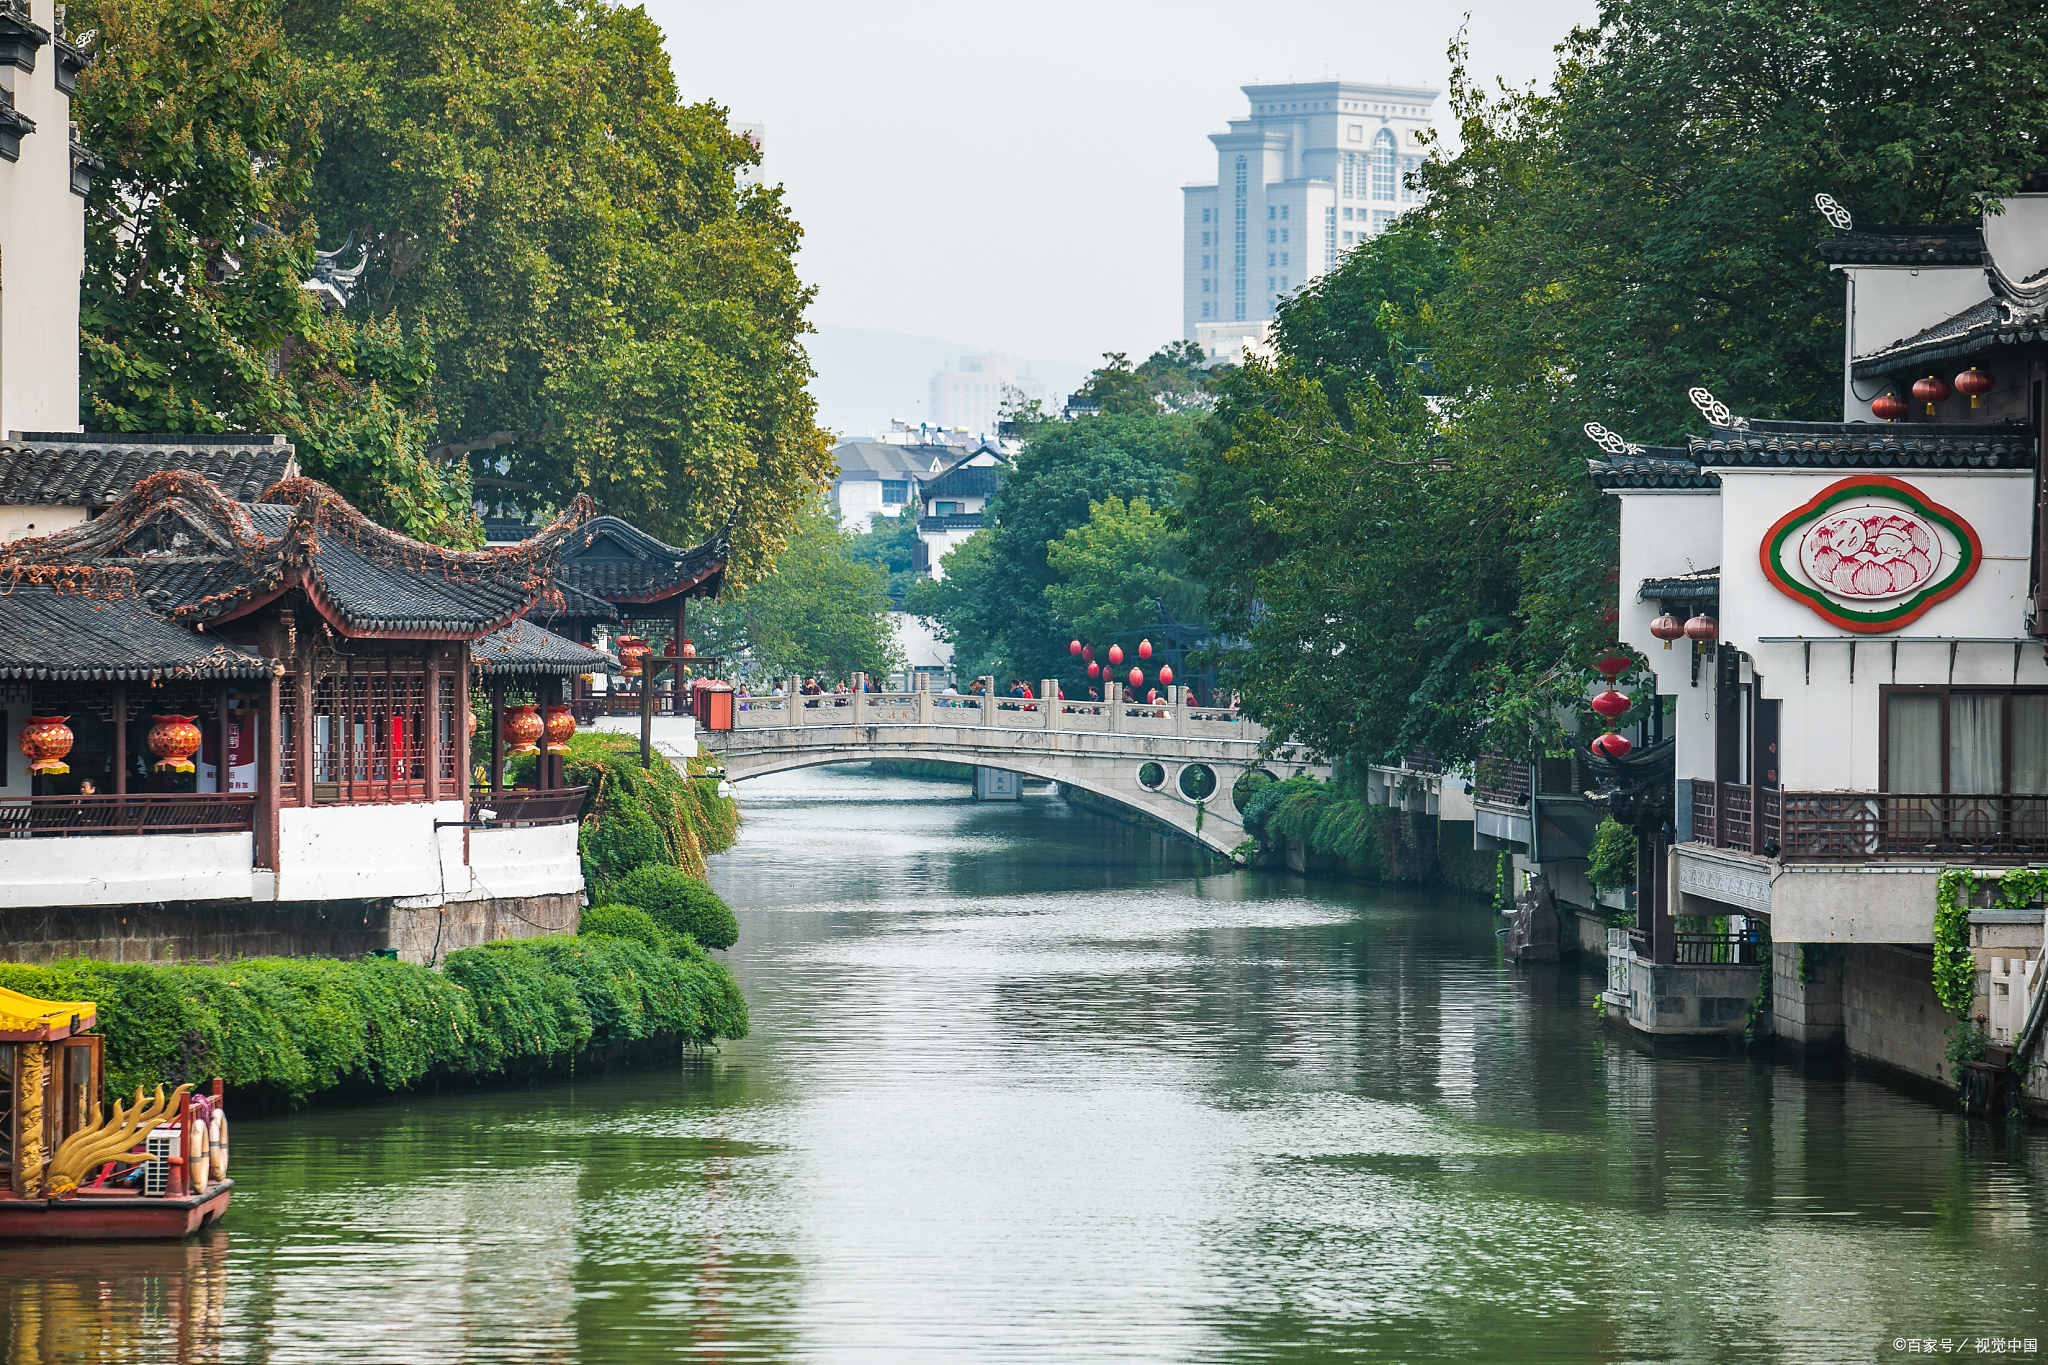 夫子庙秦淮风光带,南京的一大特色景区,绝对是个集历史文化,民俗风情